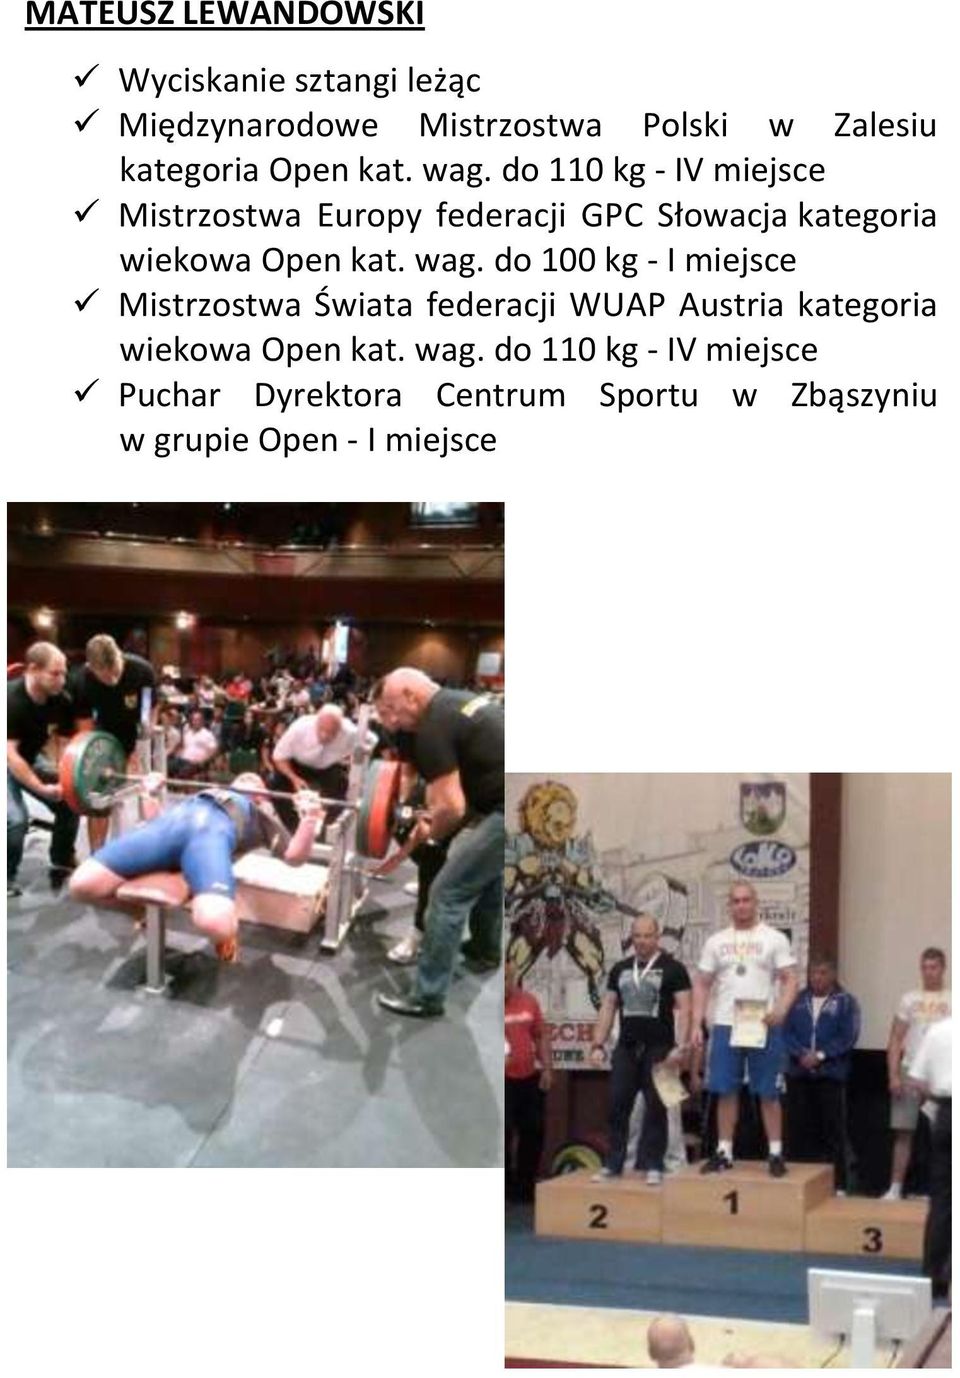 do 110 kg - IV miejsce Mistrzostwa Europy federacji GPC Słowacja kategoria wiekowa  do 100 kg - I